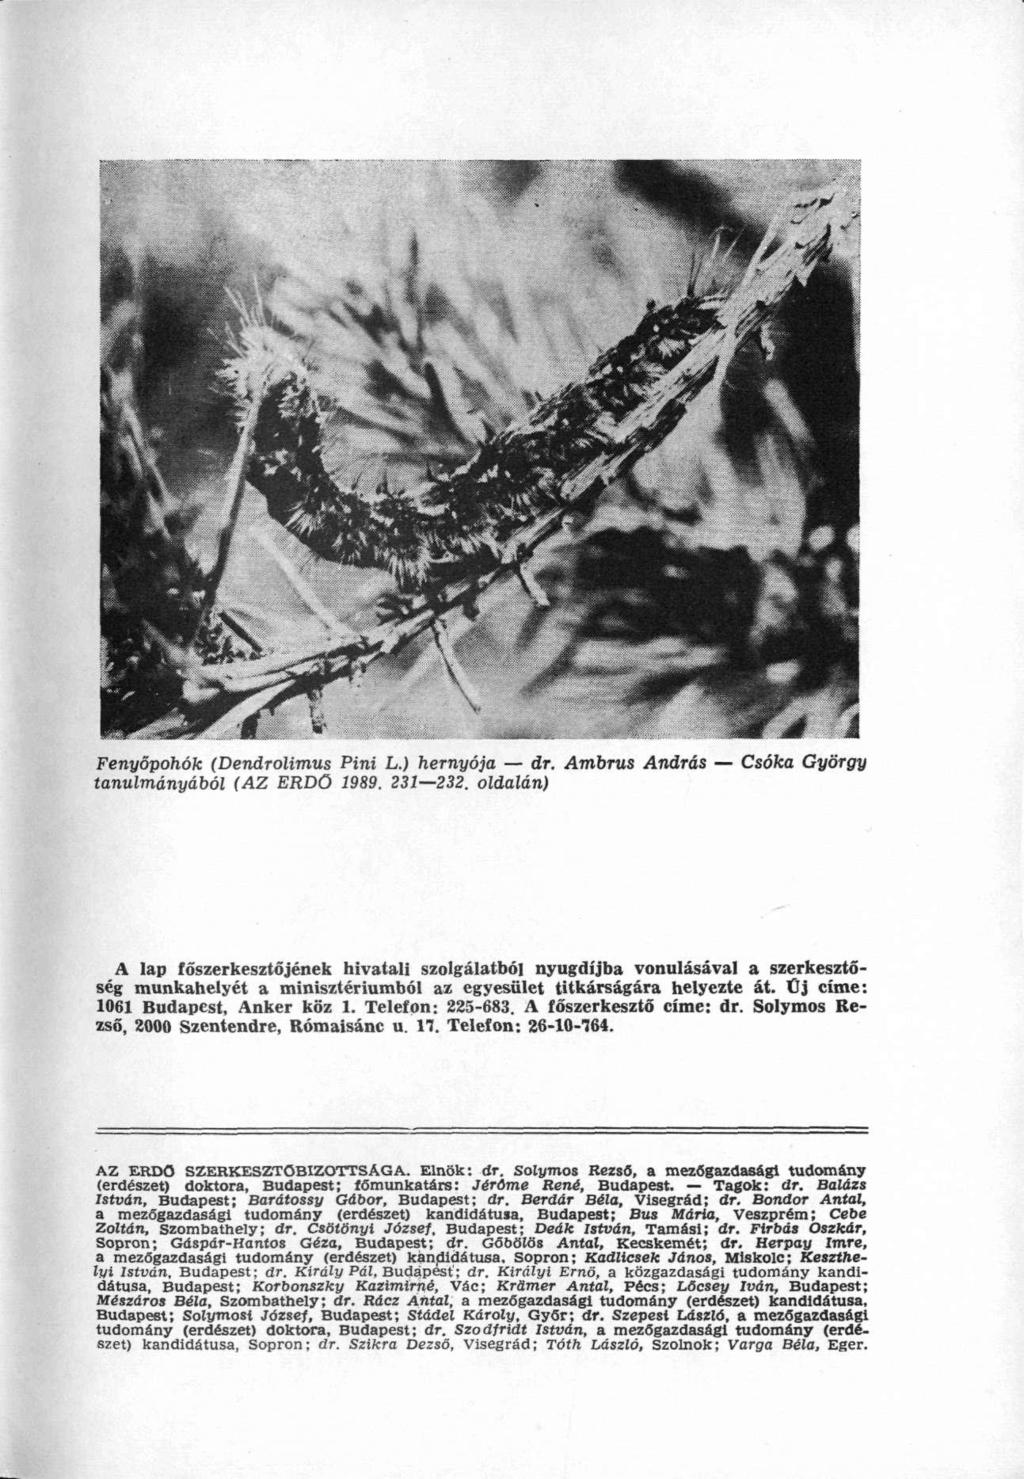 Fenyőpohók (Dendrolimus Pini L.) hernyója dr. Ambrus András Csóka György tanulmányából (AZ ERDŐ 1989. 231 232.